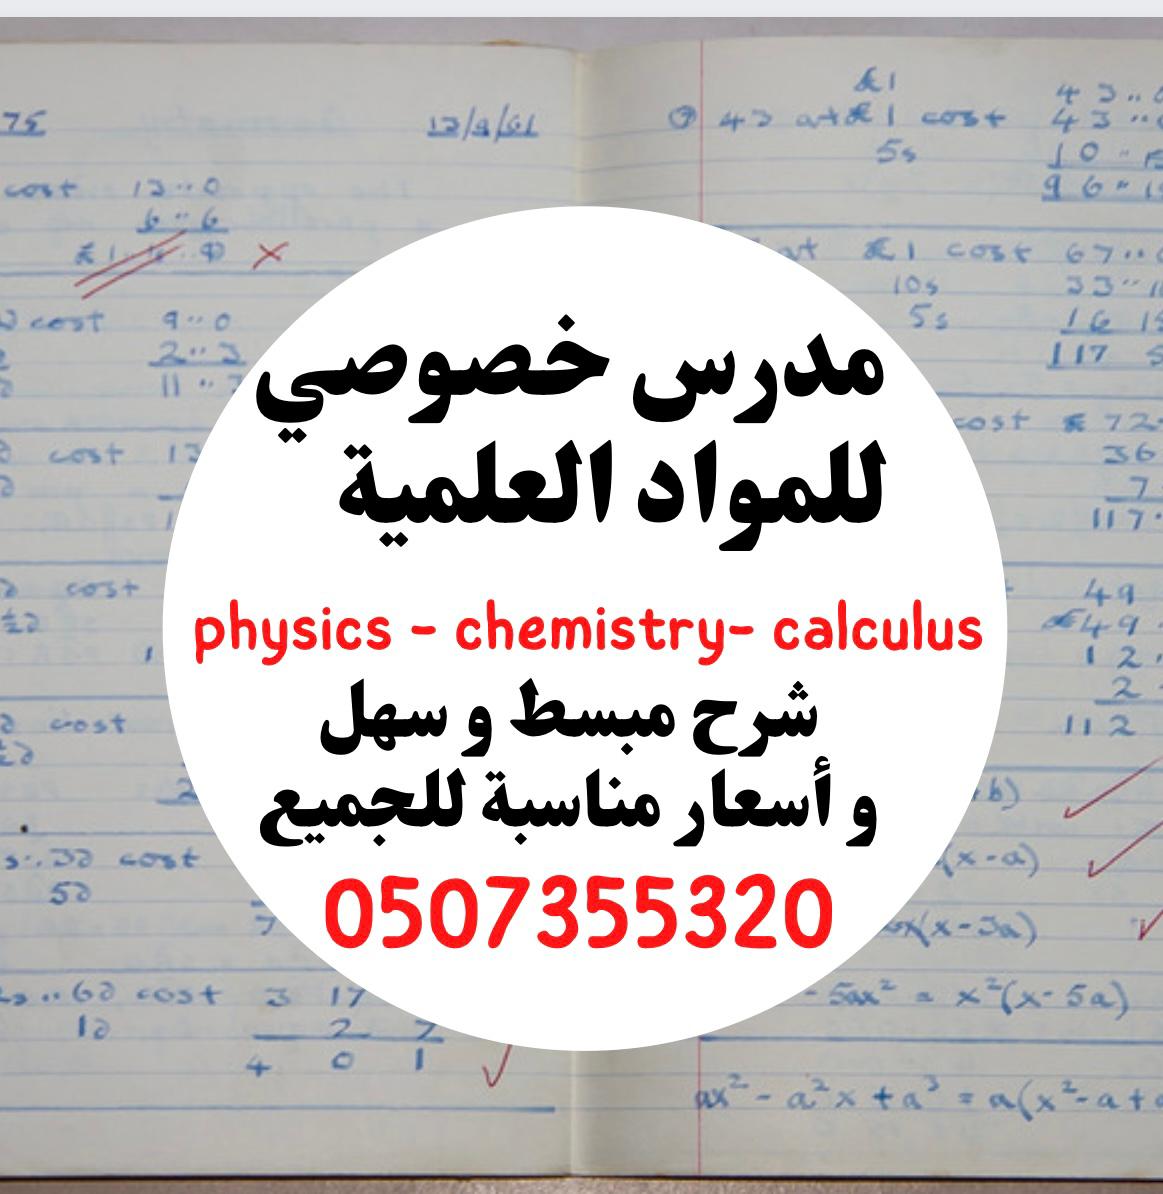 مدرس اردني خصوصي للمواد العلمية ( فزياء كيمياء رياضيات )0507355320